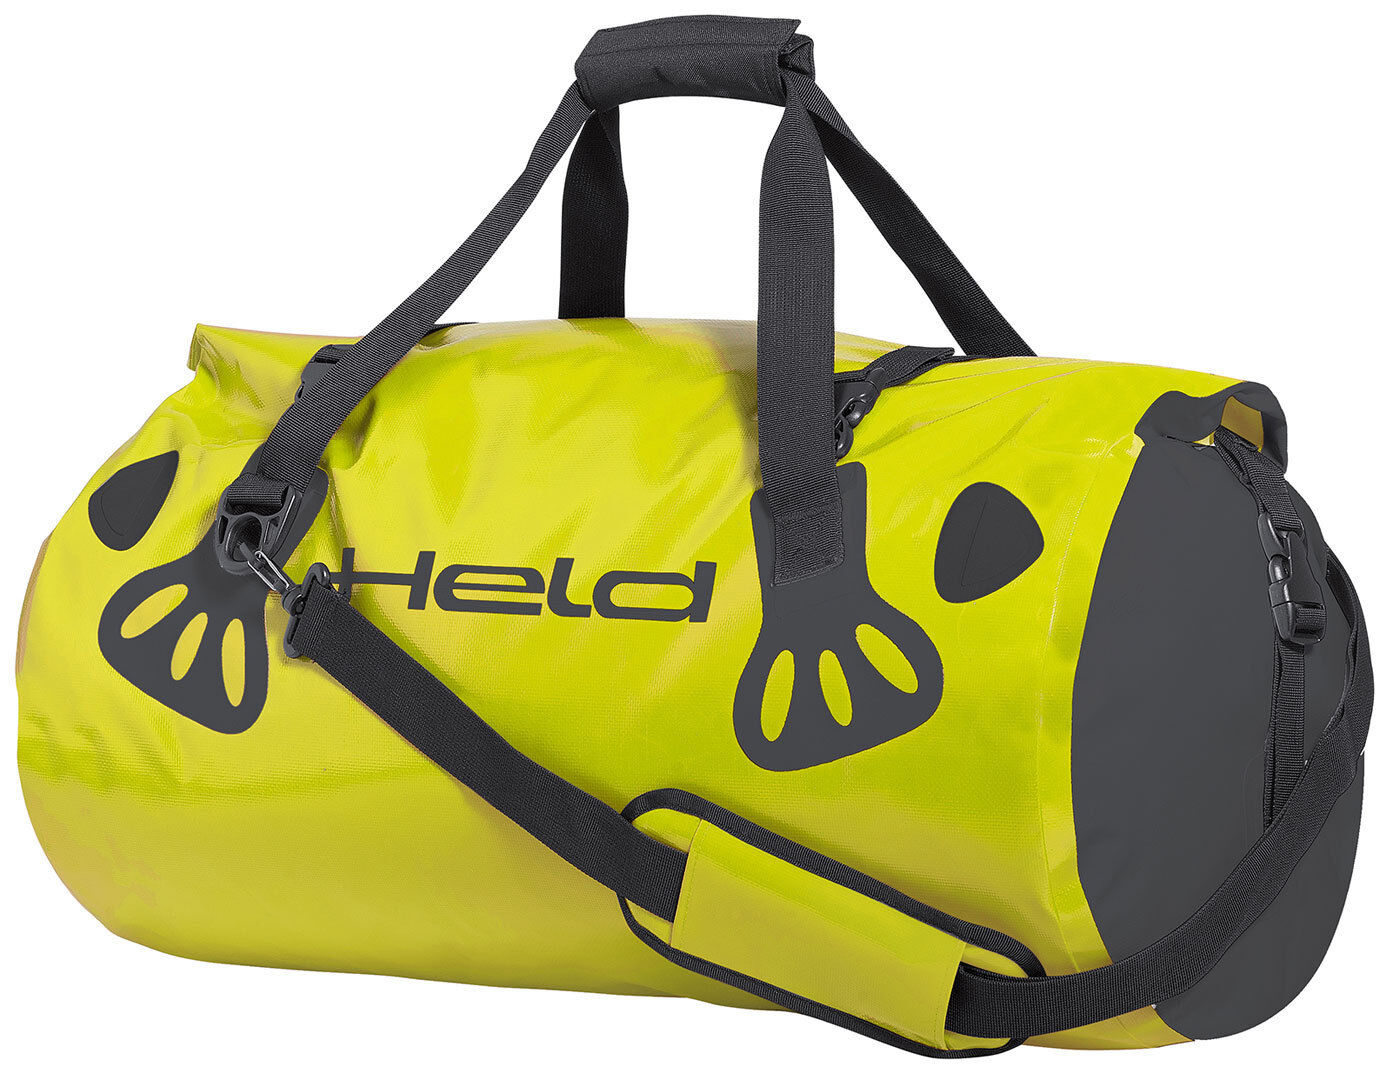 Held Carry-Bag Sacchetto dei bagagli Nero Giallo 51-60l